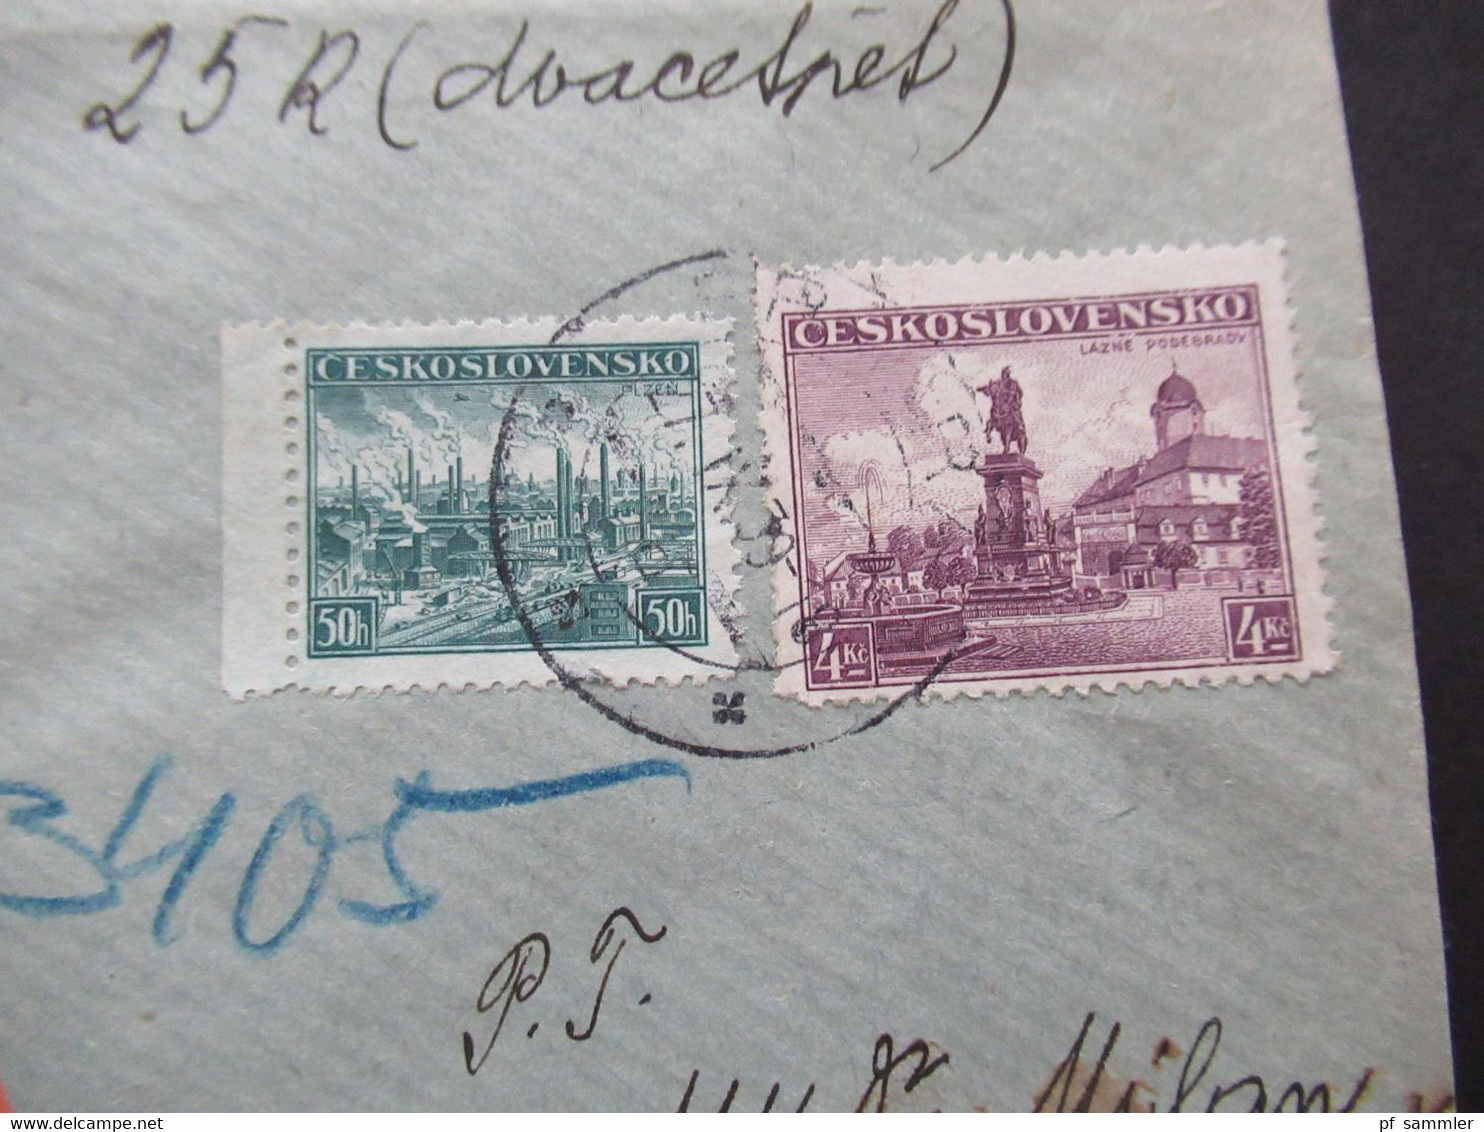 CSSR 27.9.1939 Protektorat Mitläufer Böhmen Und Mähren Einschreiben Dobirka Remboursement Pribram - Prag - Storia Postale